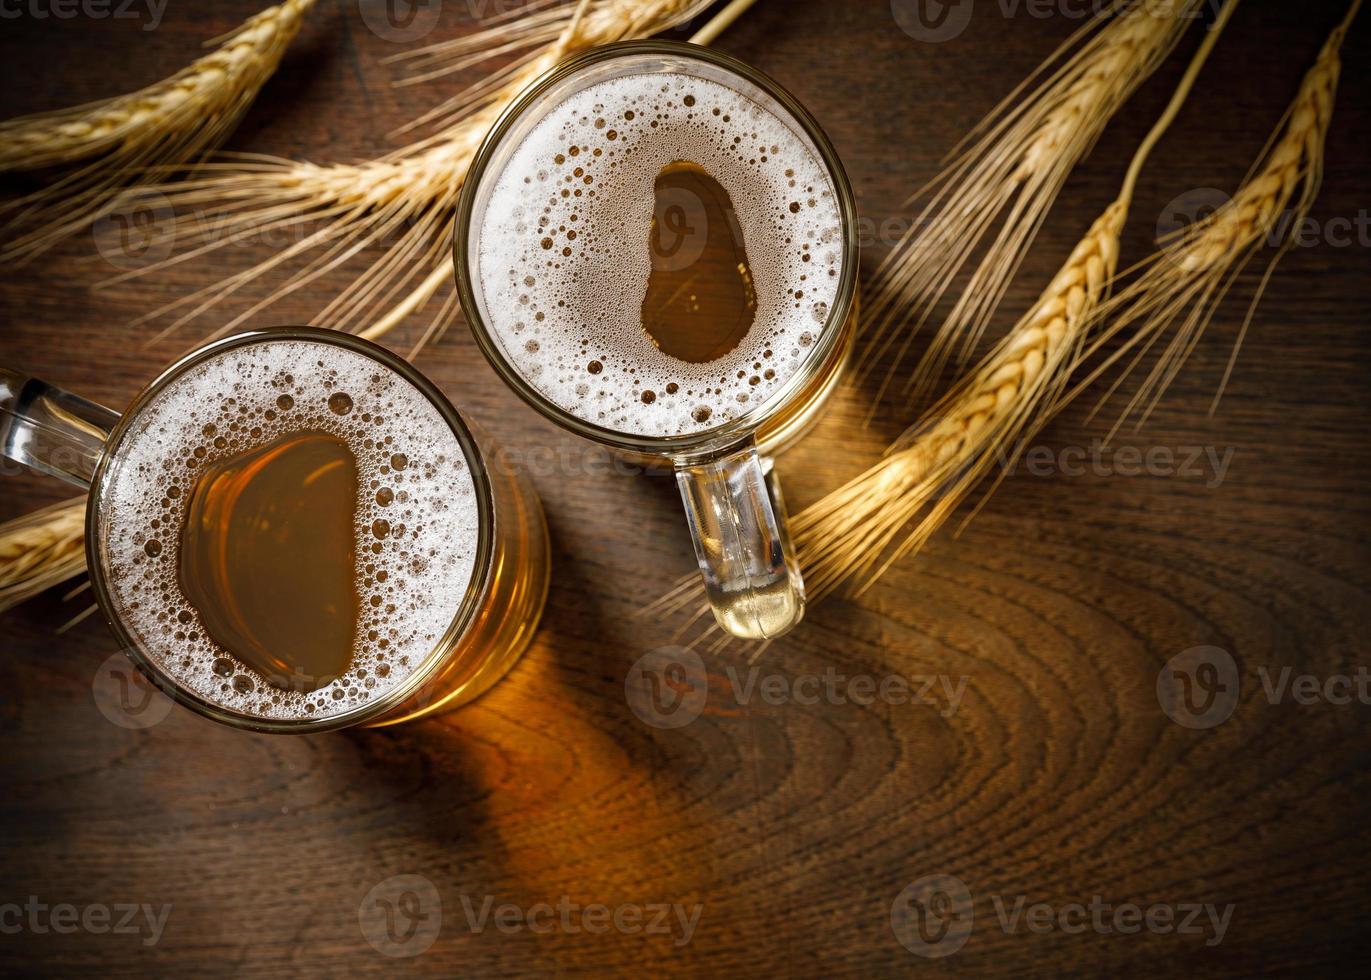 glasögon av ljus öl med vete på de trä- tabell, kopia Plats för din text foto